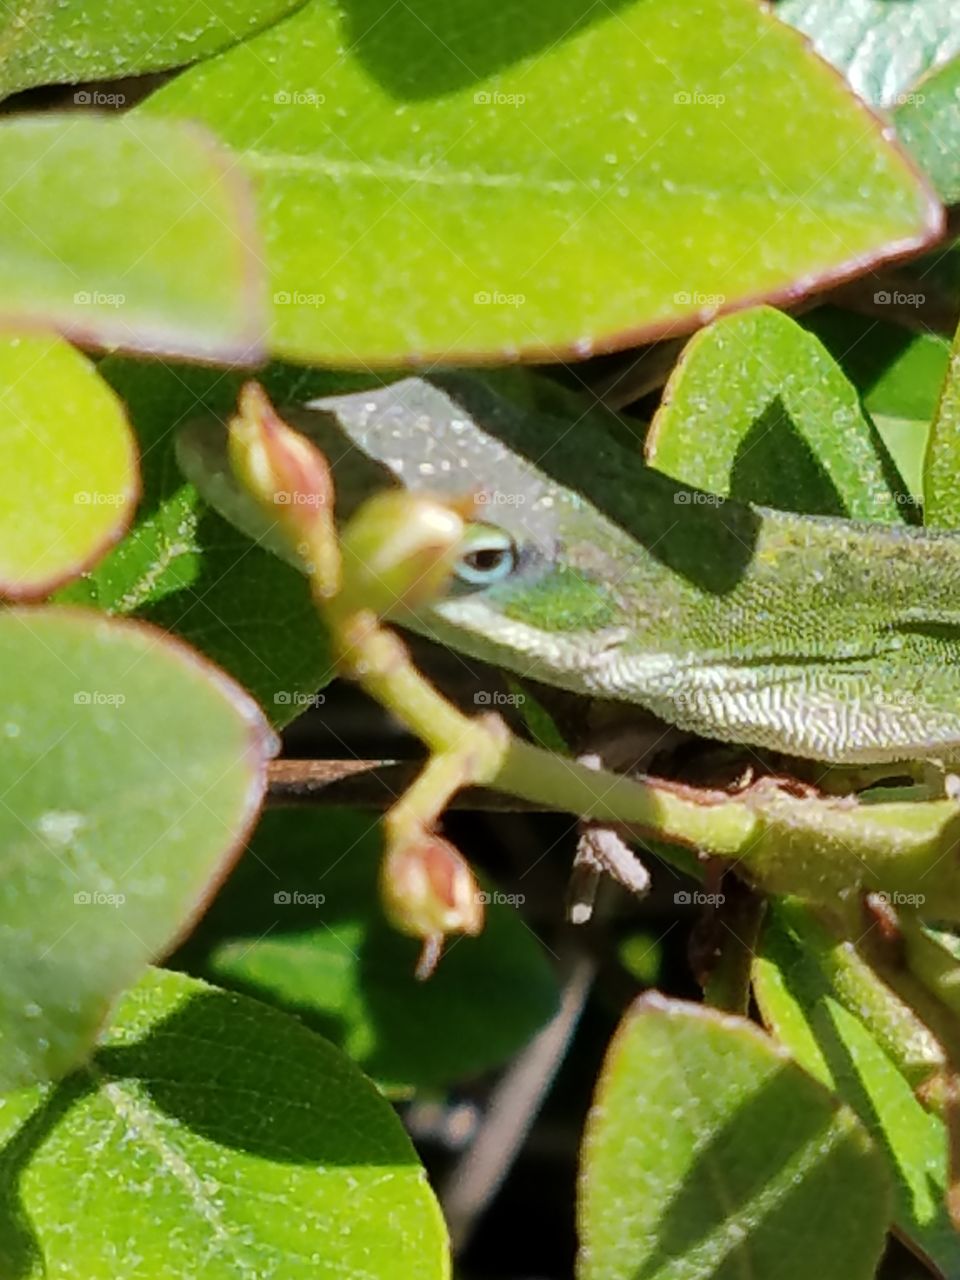 Lizard in a bush